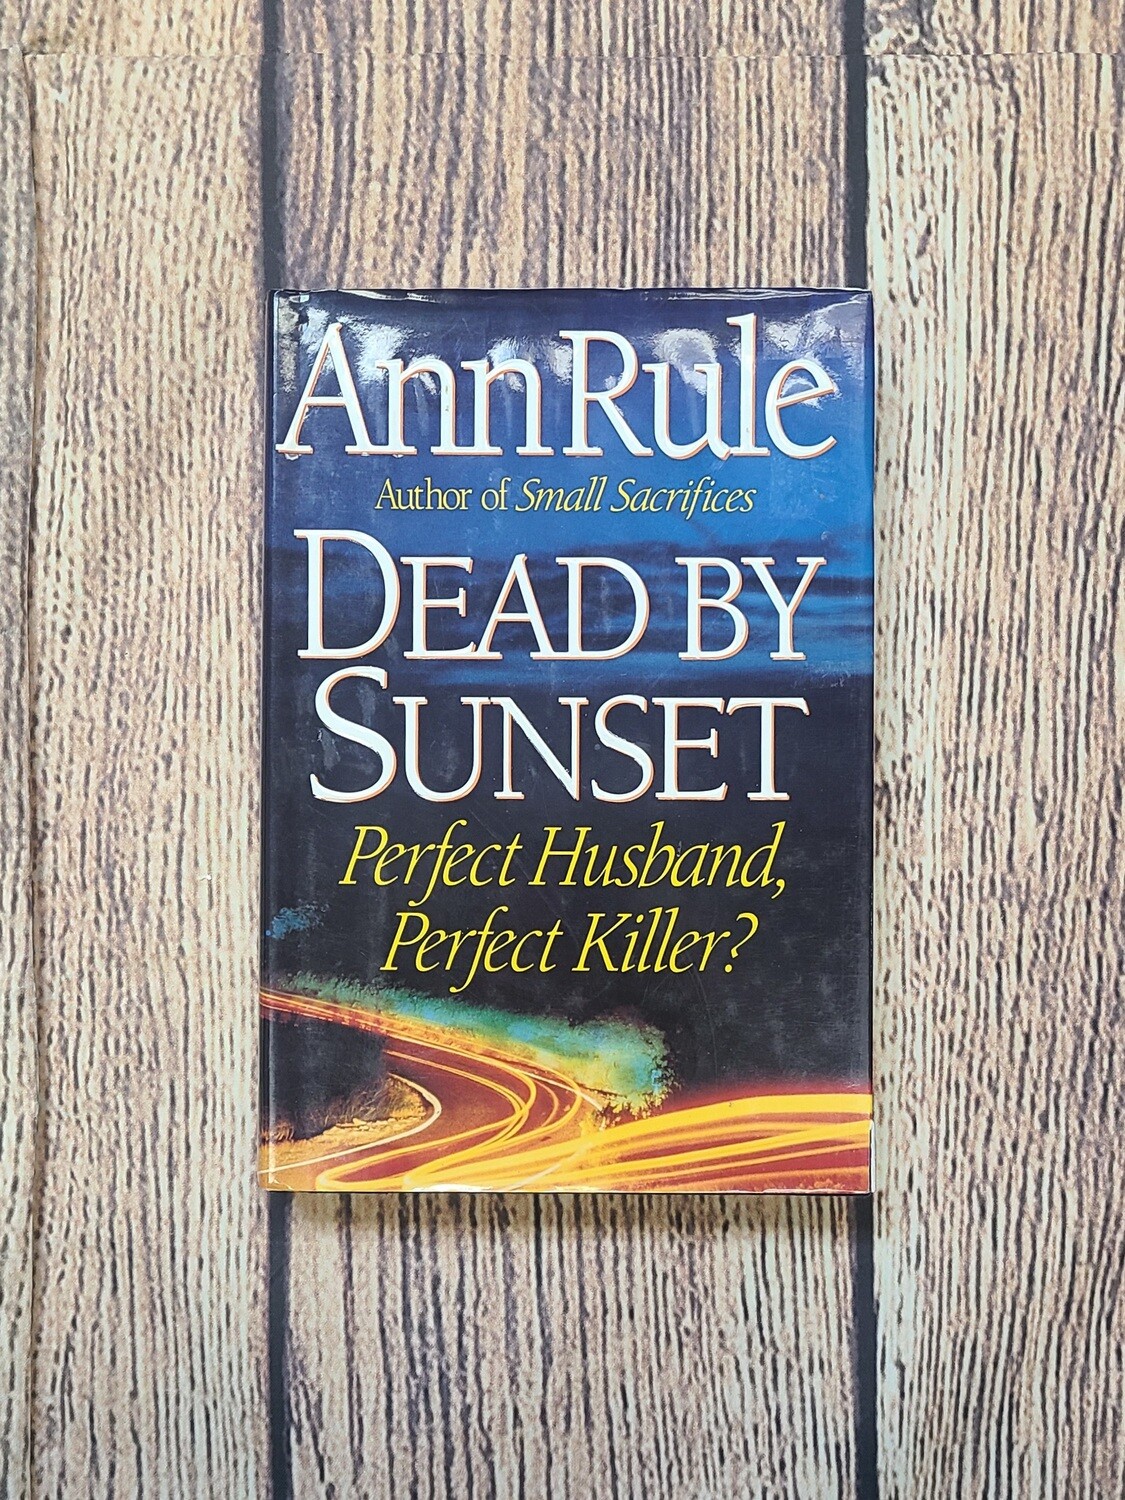 Dead By Sunset by Ann Rule